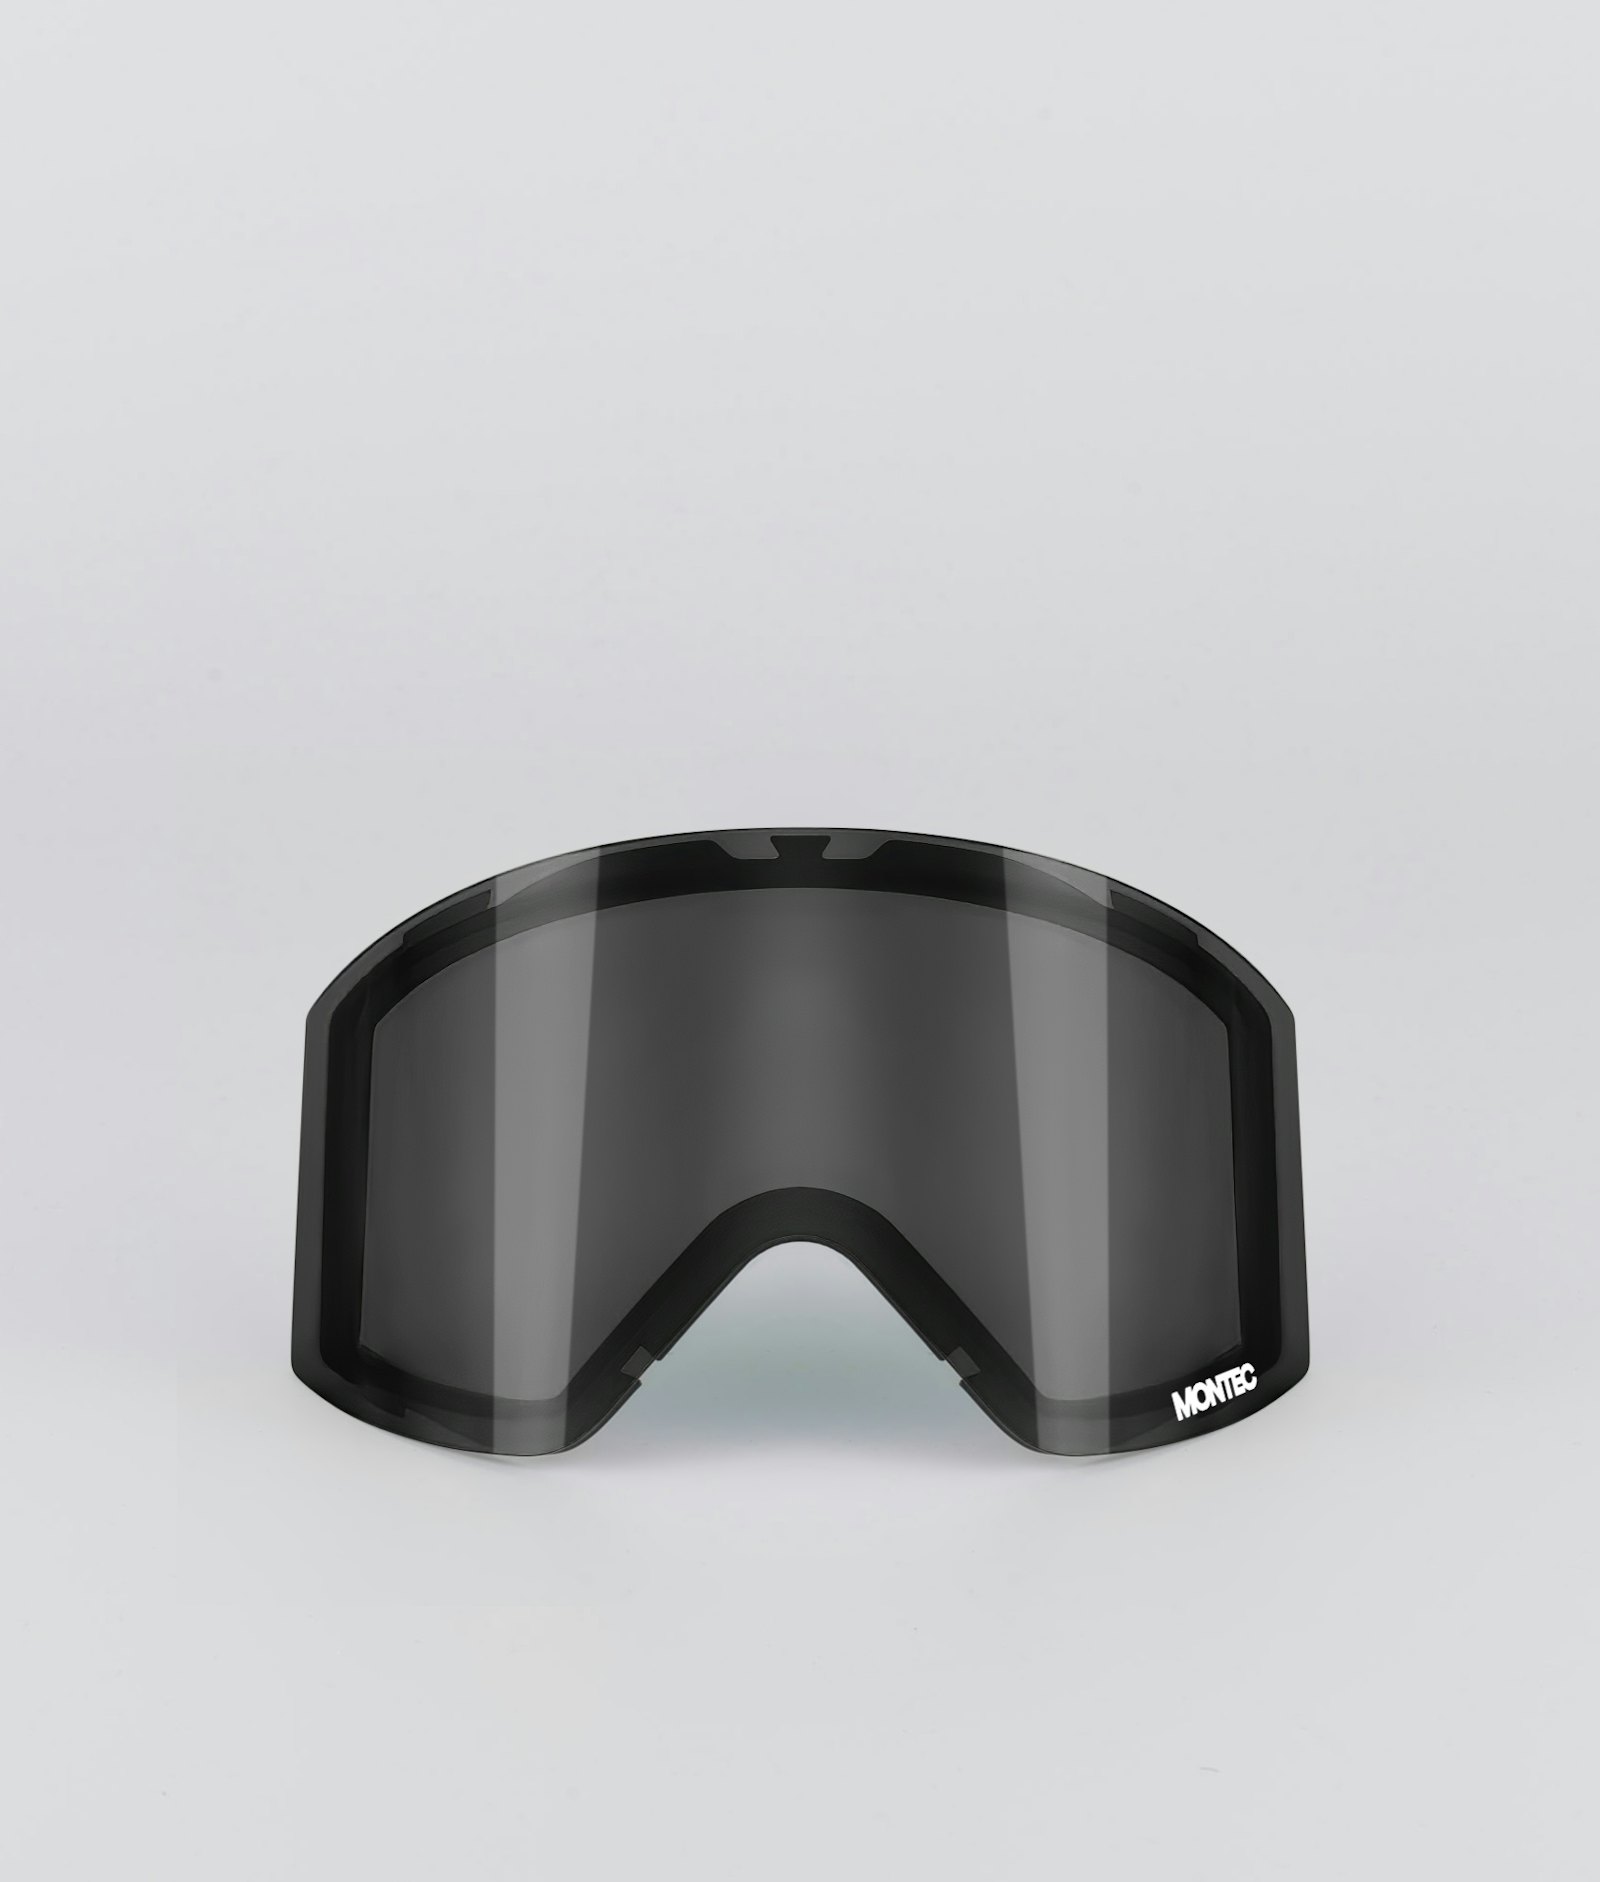 Montec Scope 2020 Goggle Lens Medium Extralins Snow Black